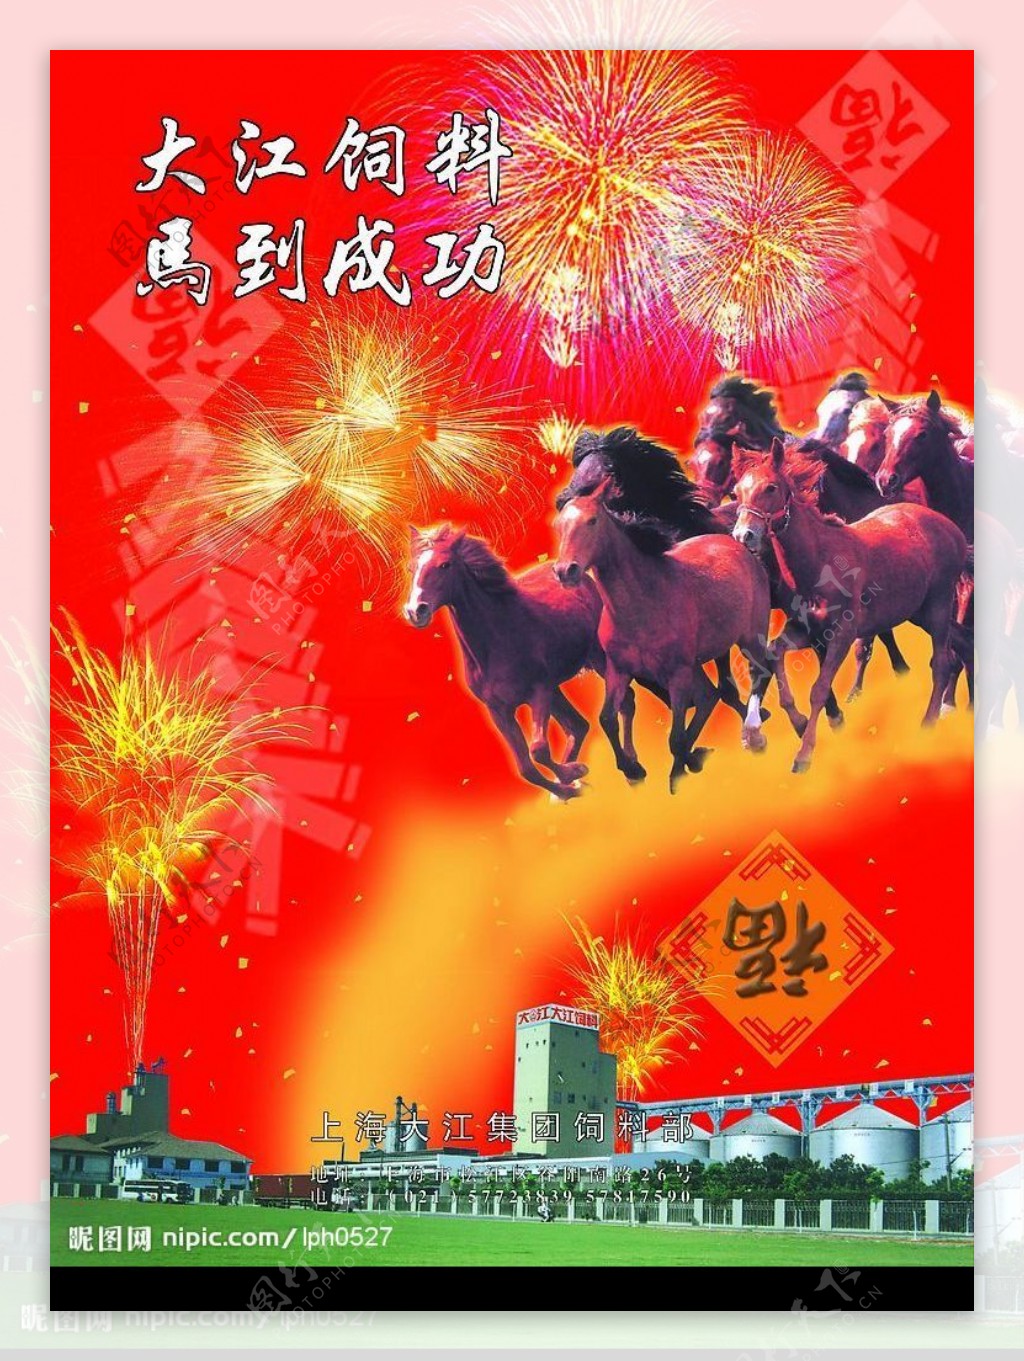 上海大江集团饲料部新年广告马到成功图片